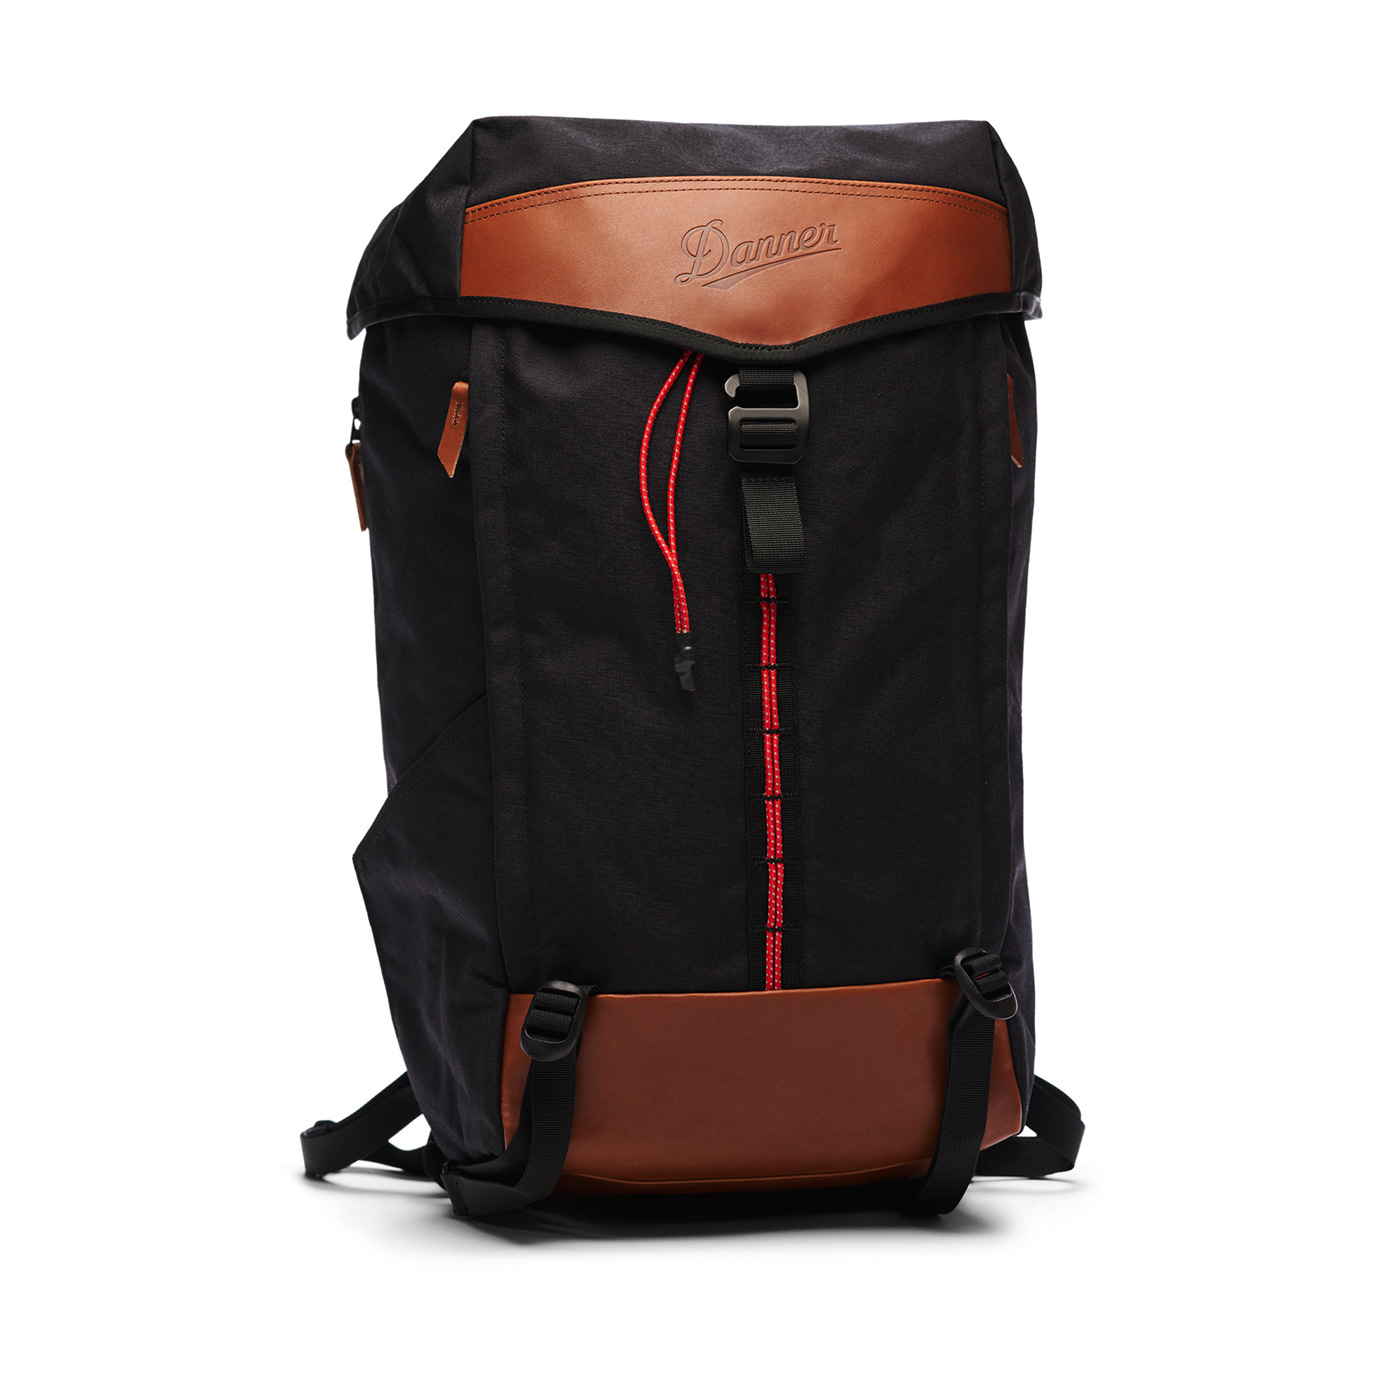 accessories design backpack Backpack design backpack designer danner daypack Hike outdoors softgoods Softgoods Design